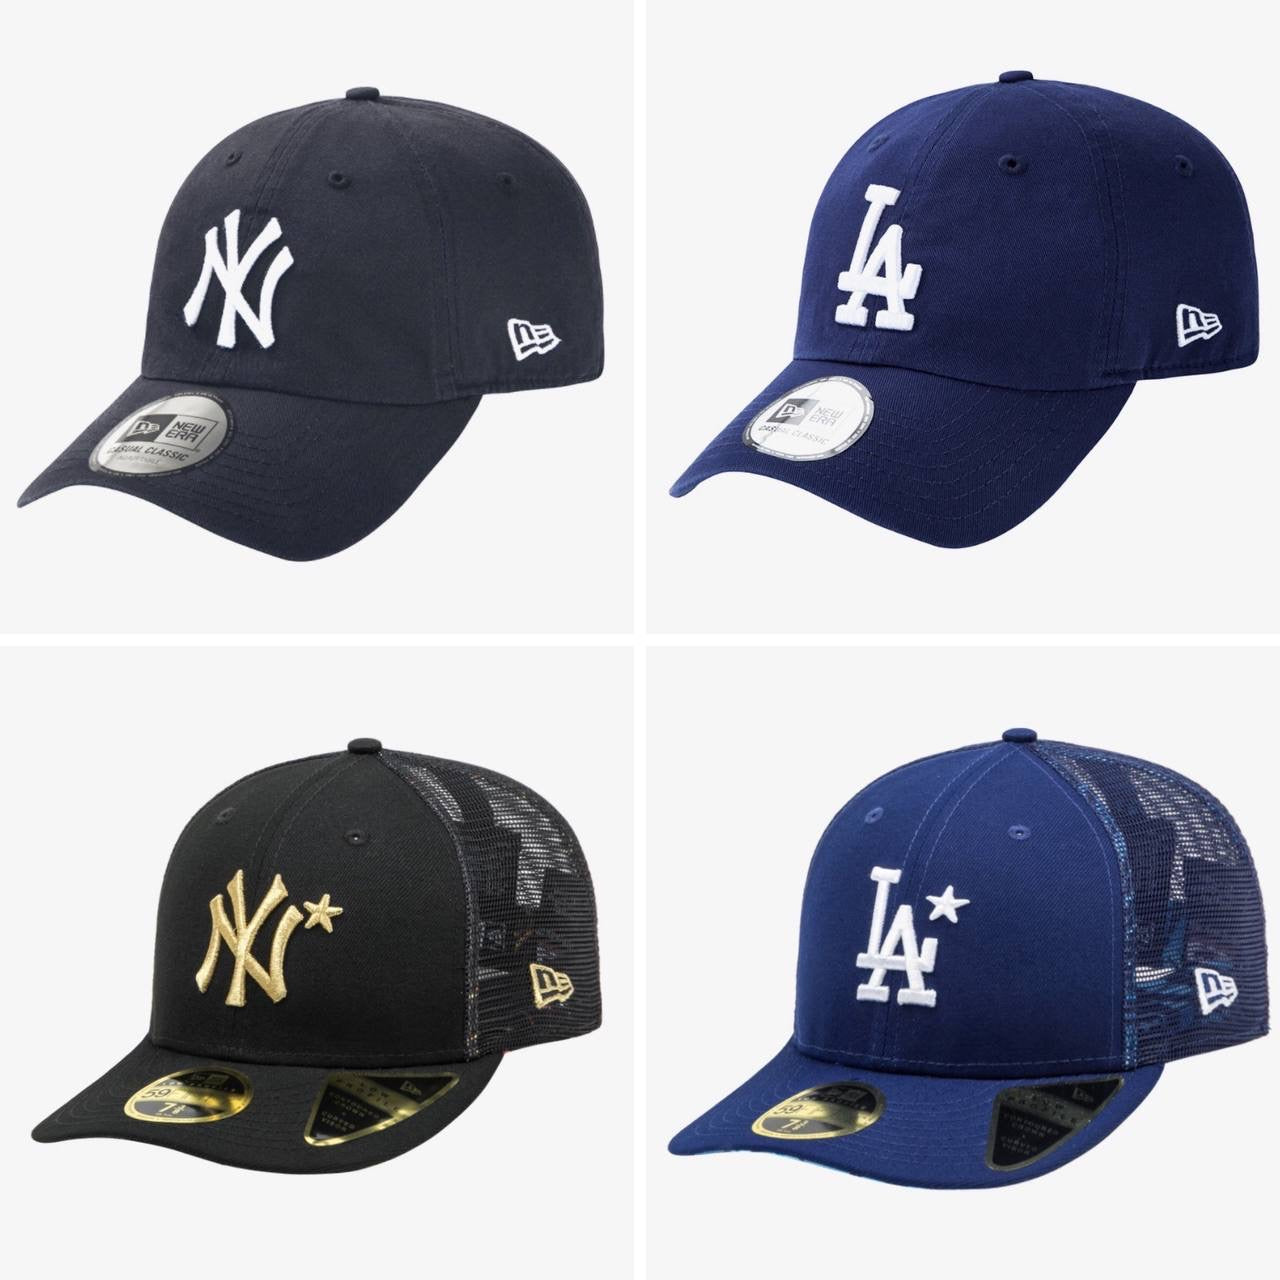 MLB YANKEES NEWERA Cap - Collection #1